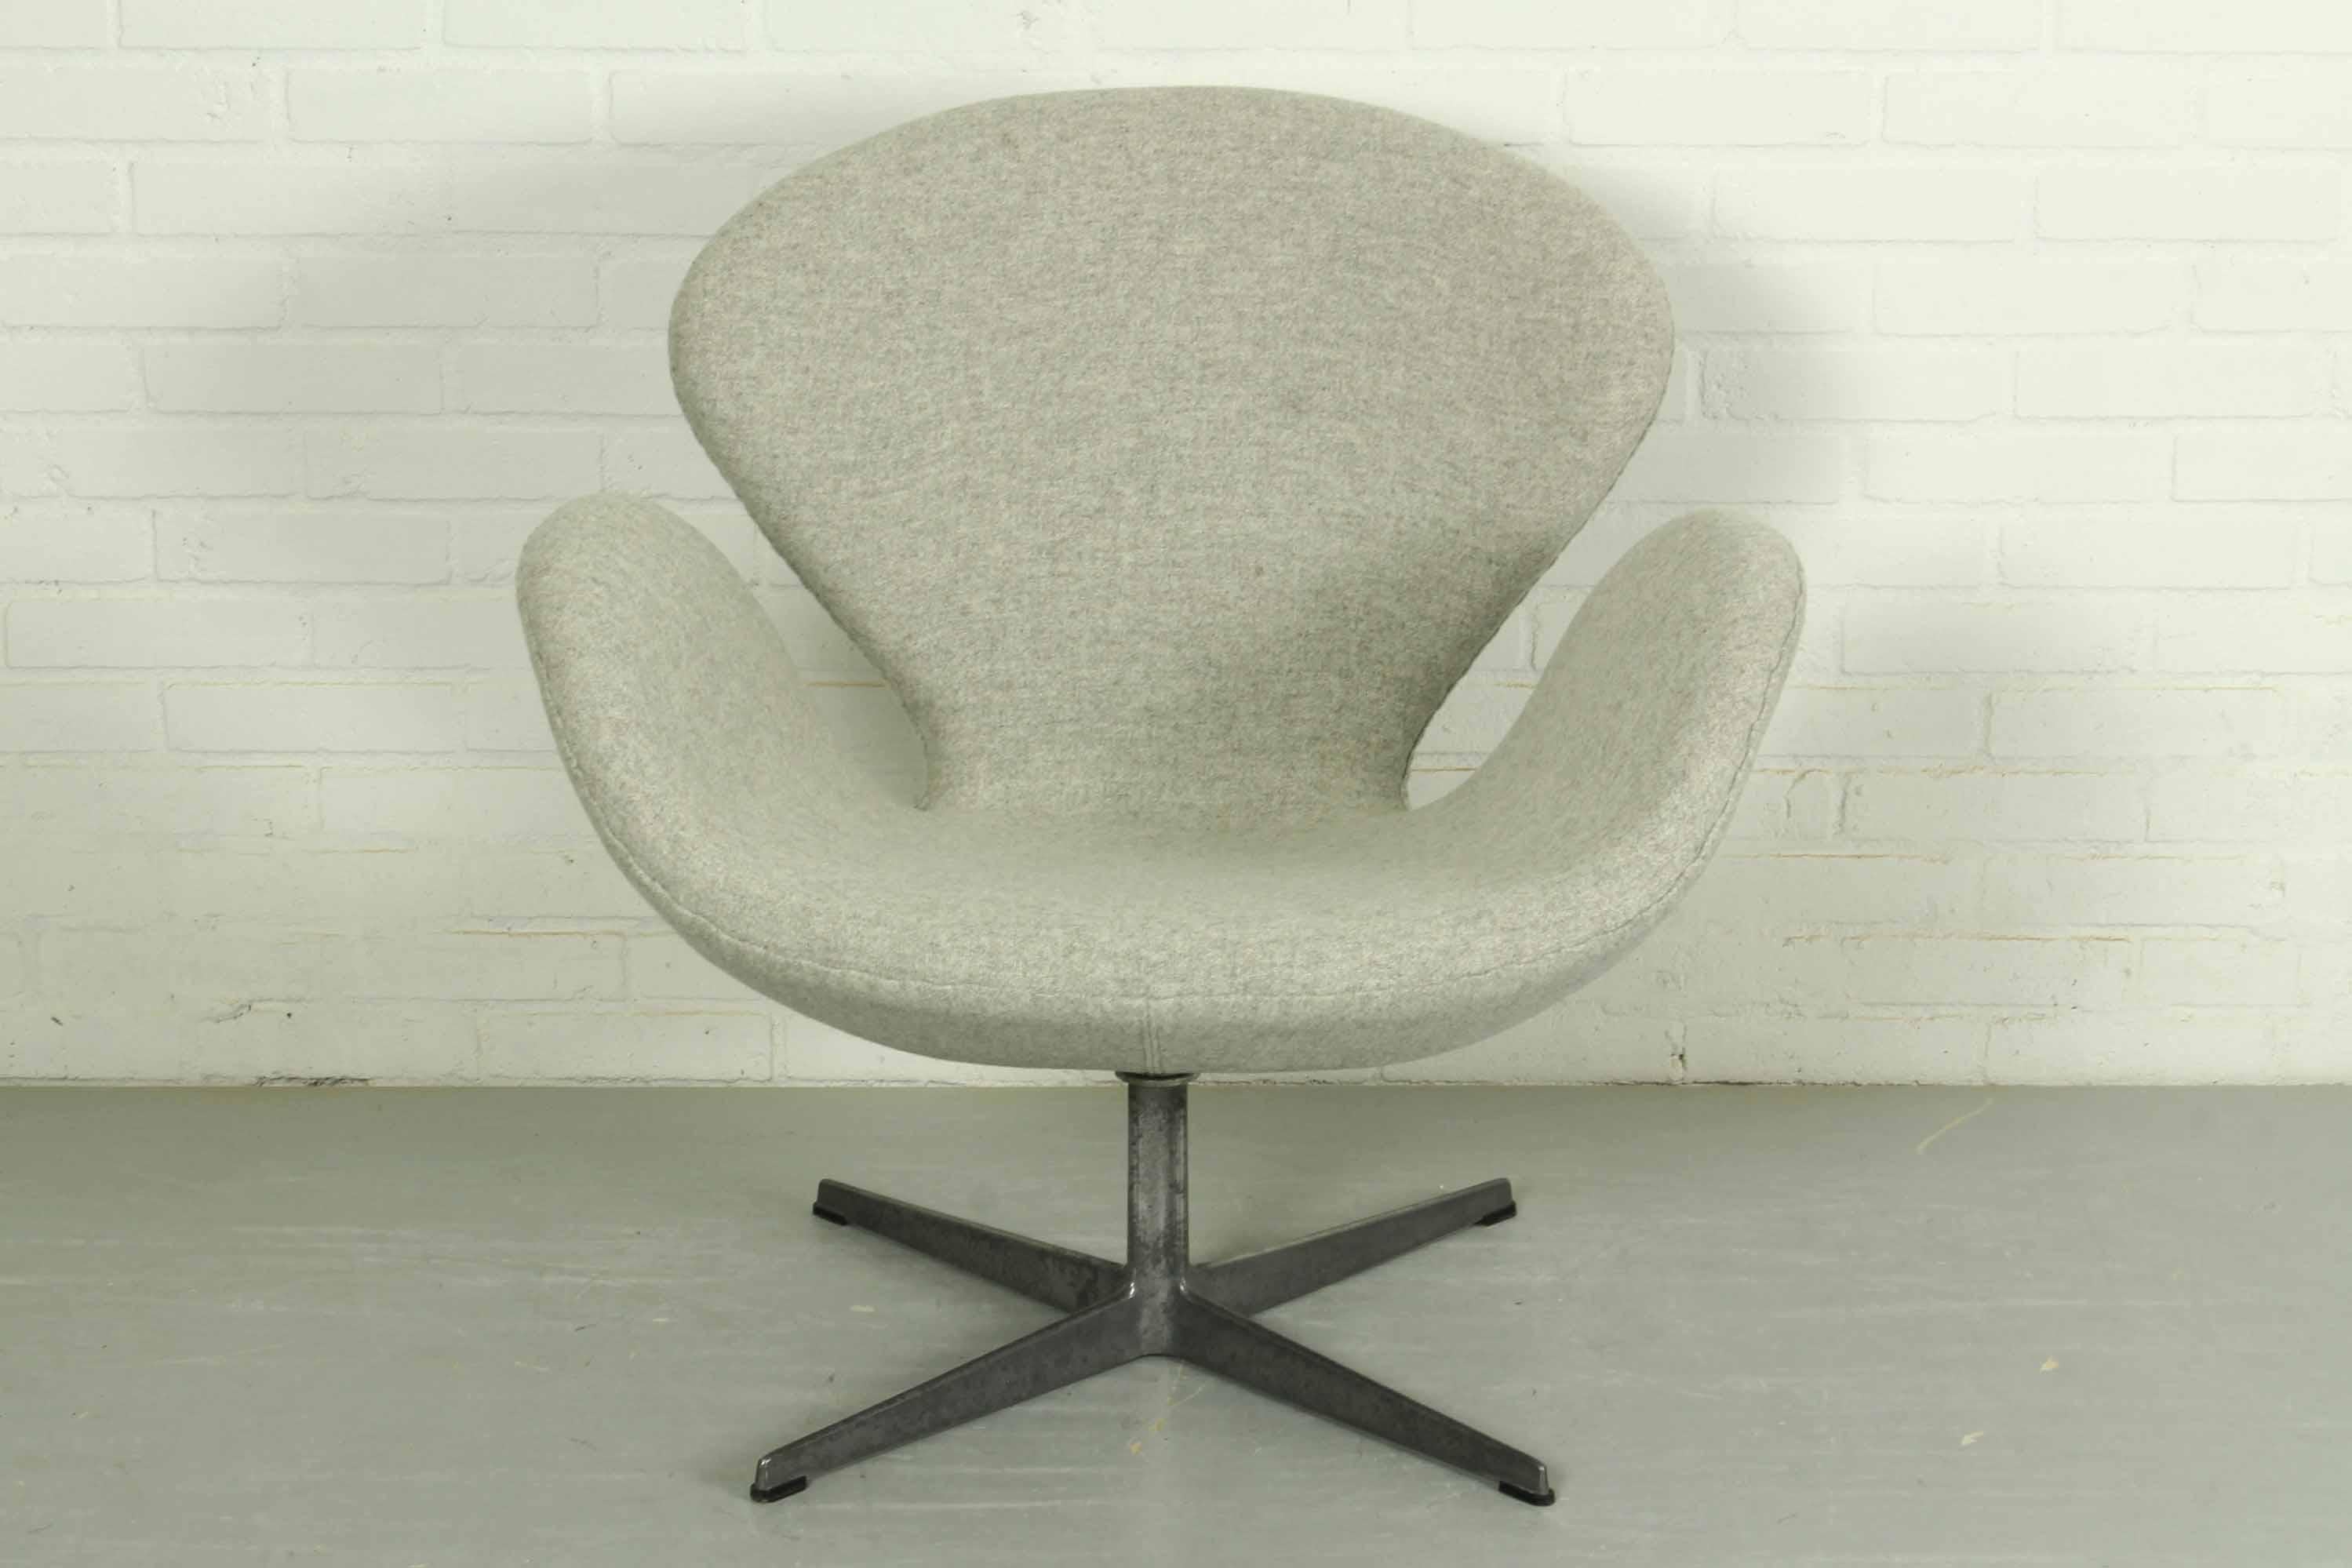 Schwan-Stuhl aus den 1960er Jahren, entworfen von Arne Jacobsen für Fritz Hansen. Mit schwenkbarem Vier-Sterne-Fuß aus gebürstetem Aluminium. Schön gepolstert mit Kvadrat Tonus Meadow (90% Wolle, 100000 Martindale Abrieb). Aufdruck im Sockel.